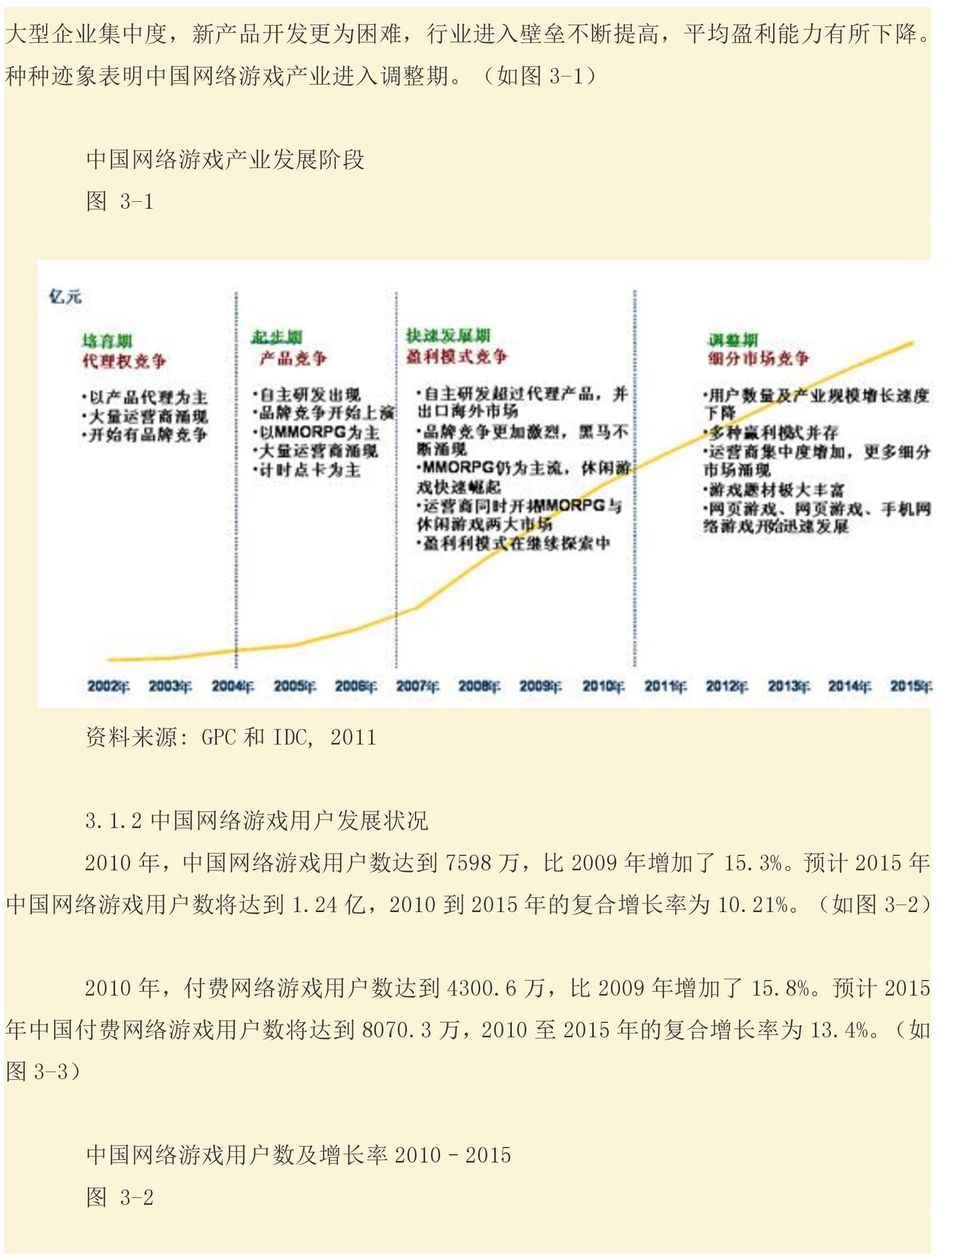 3% 预 计 2015 年 中 国 网 络 游 戏 用 户 数 将 达 到 1.24 亿,2010 到 2015 年 的 复 合 增 长 率 为 10.21% ( 如 图 3-2) 2010 年, 付 费 网 络 游 戏 用 户 数 达 到 4300.